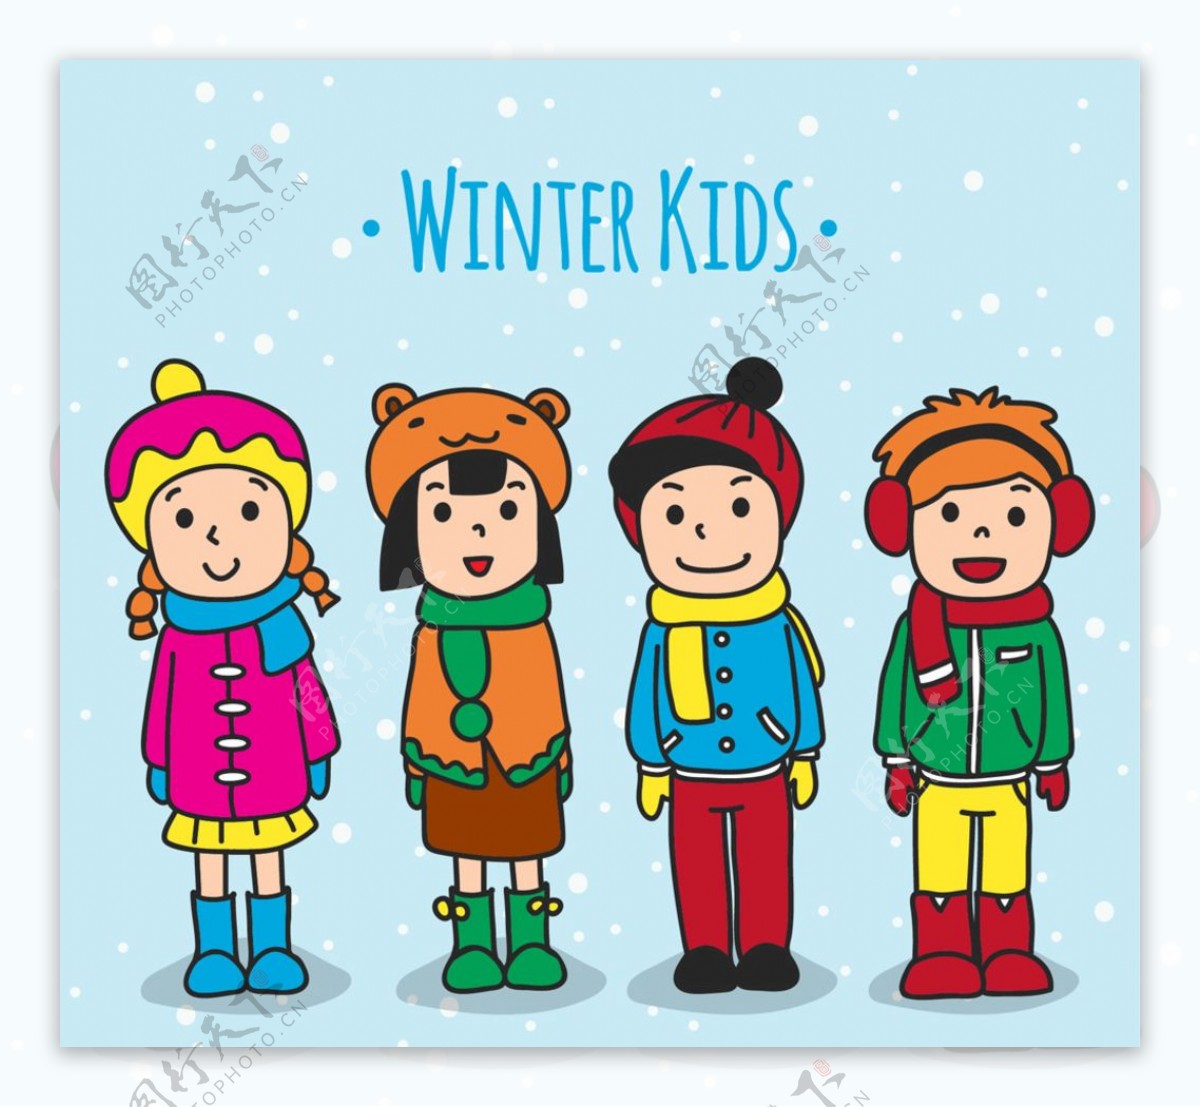 4款创意冬装儿童